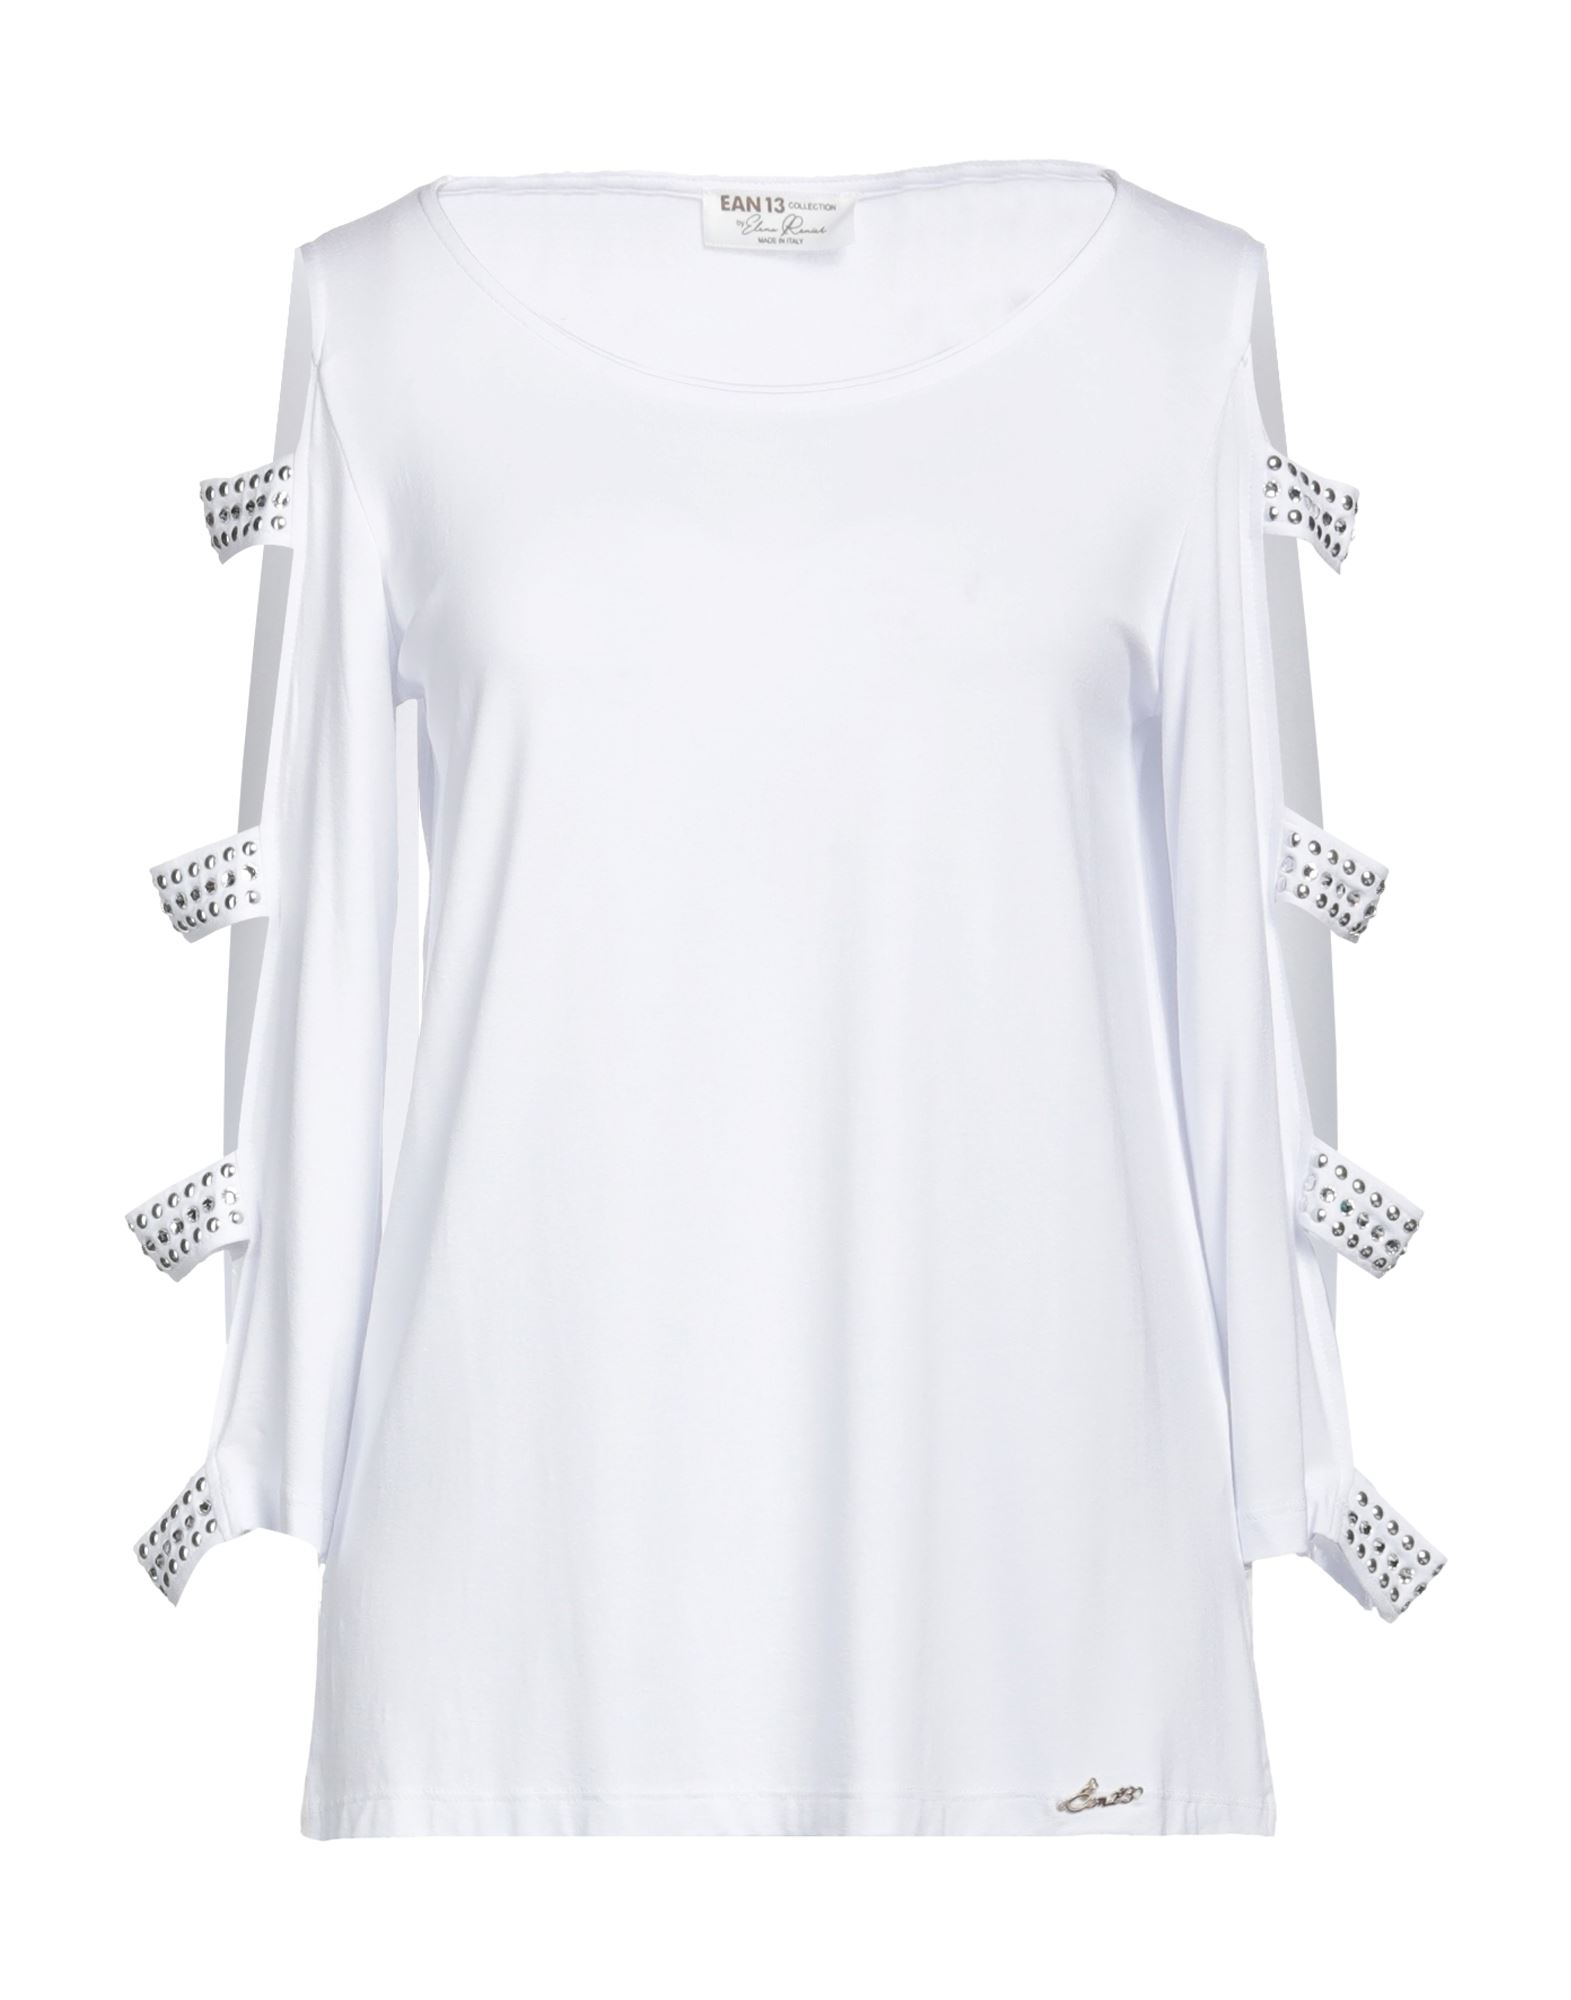 EAN 13 T-shirts Damen Weiß von EAN 13